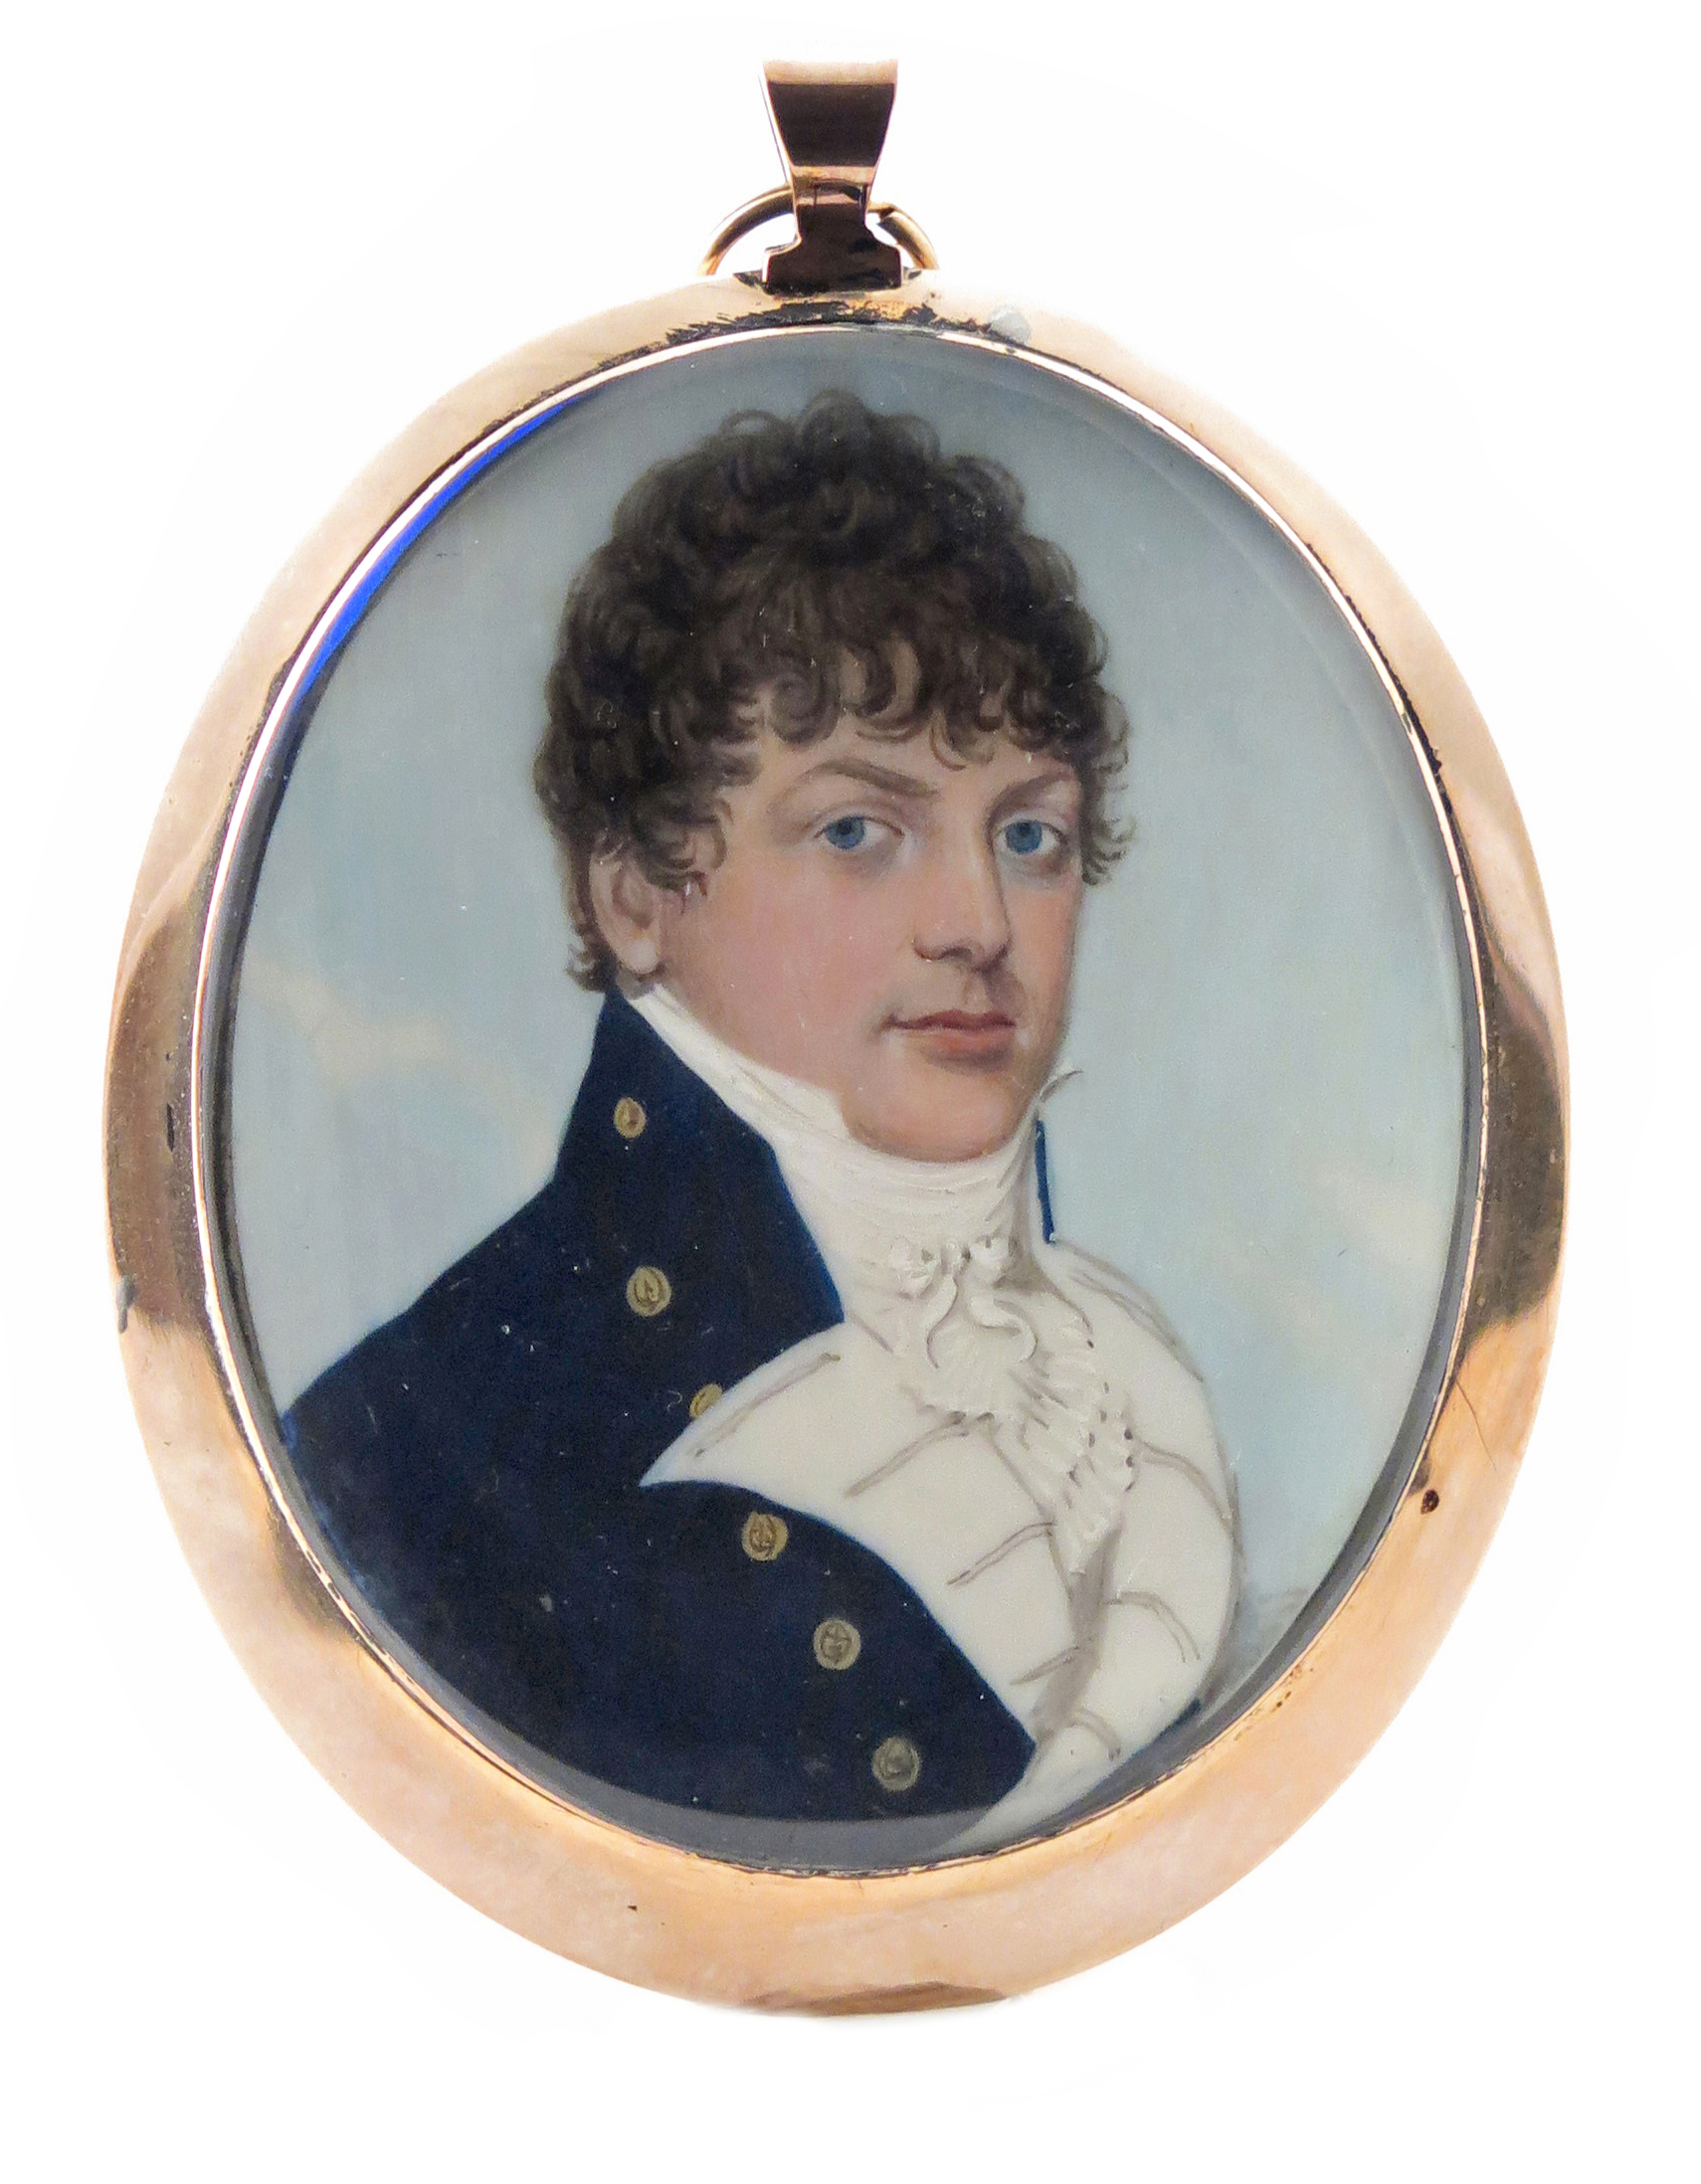 λ English School c. 1810 Portrait miniature of a gentleman, head and shoulders wearing a